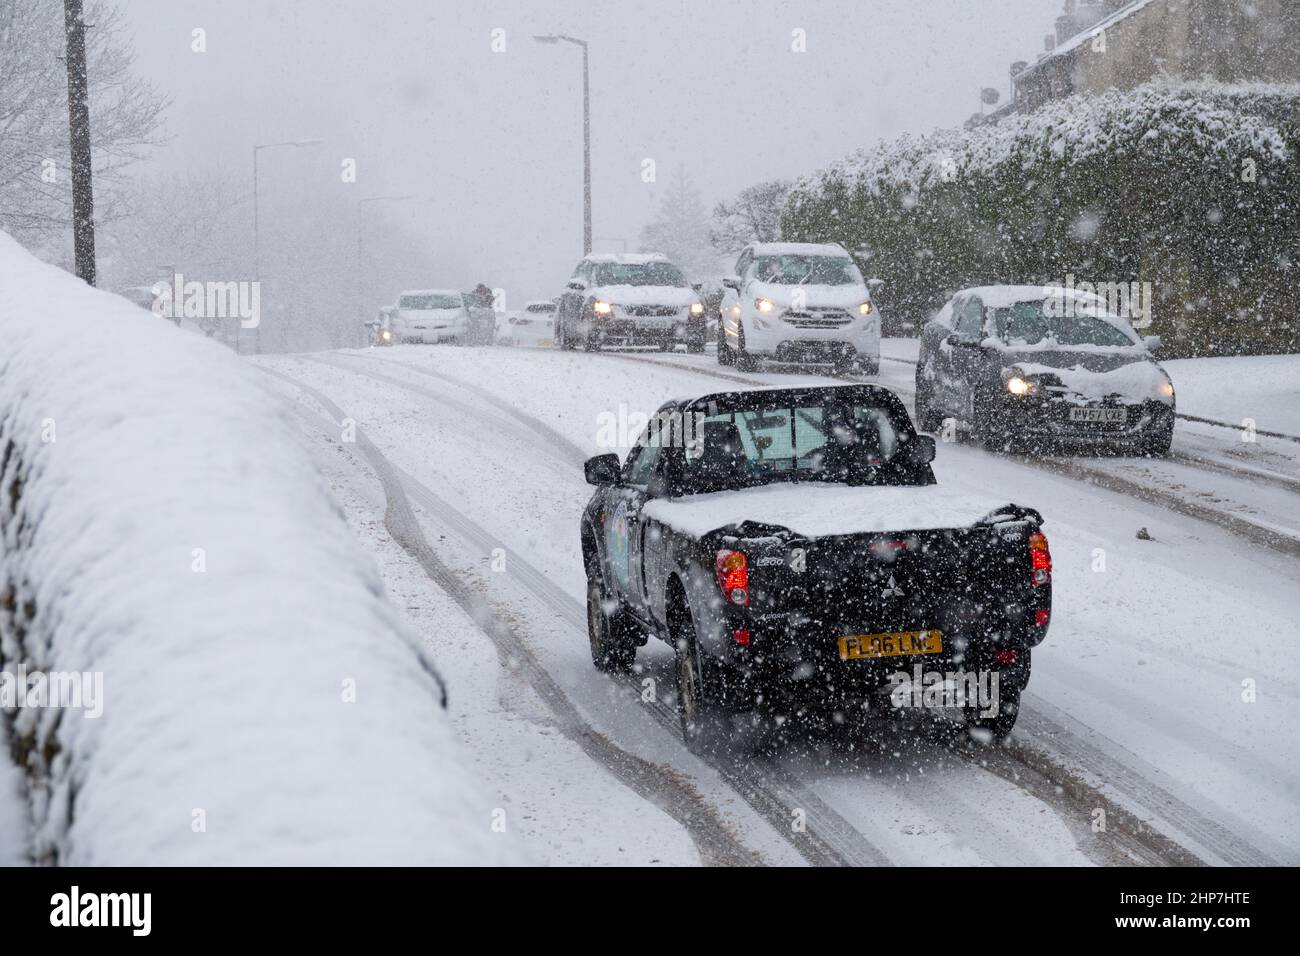 Neve e ghiaccio che causano disagi sulle colline intorno a Bradford, West Yorkshire, Regno Unito. 19th Feb 2022. Le auto lottano per muoversi su superfici invernali scivolose. Foto Stock